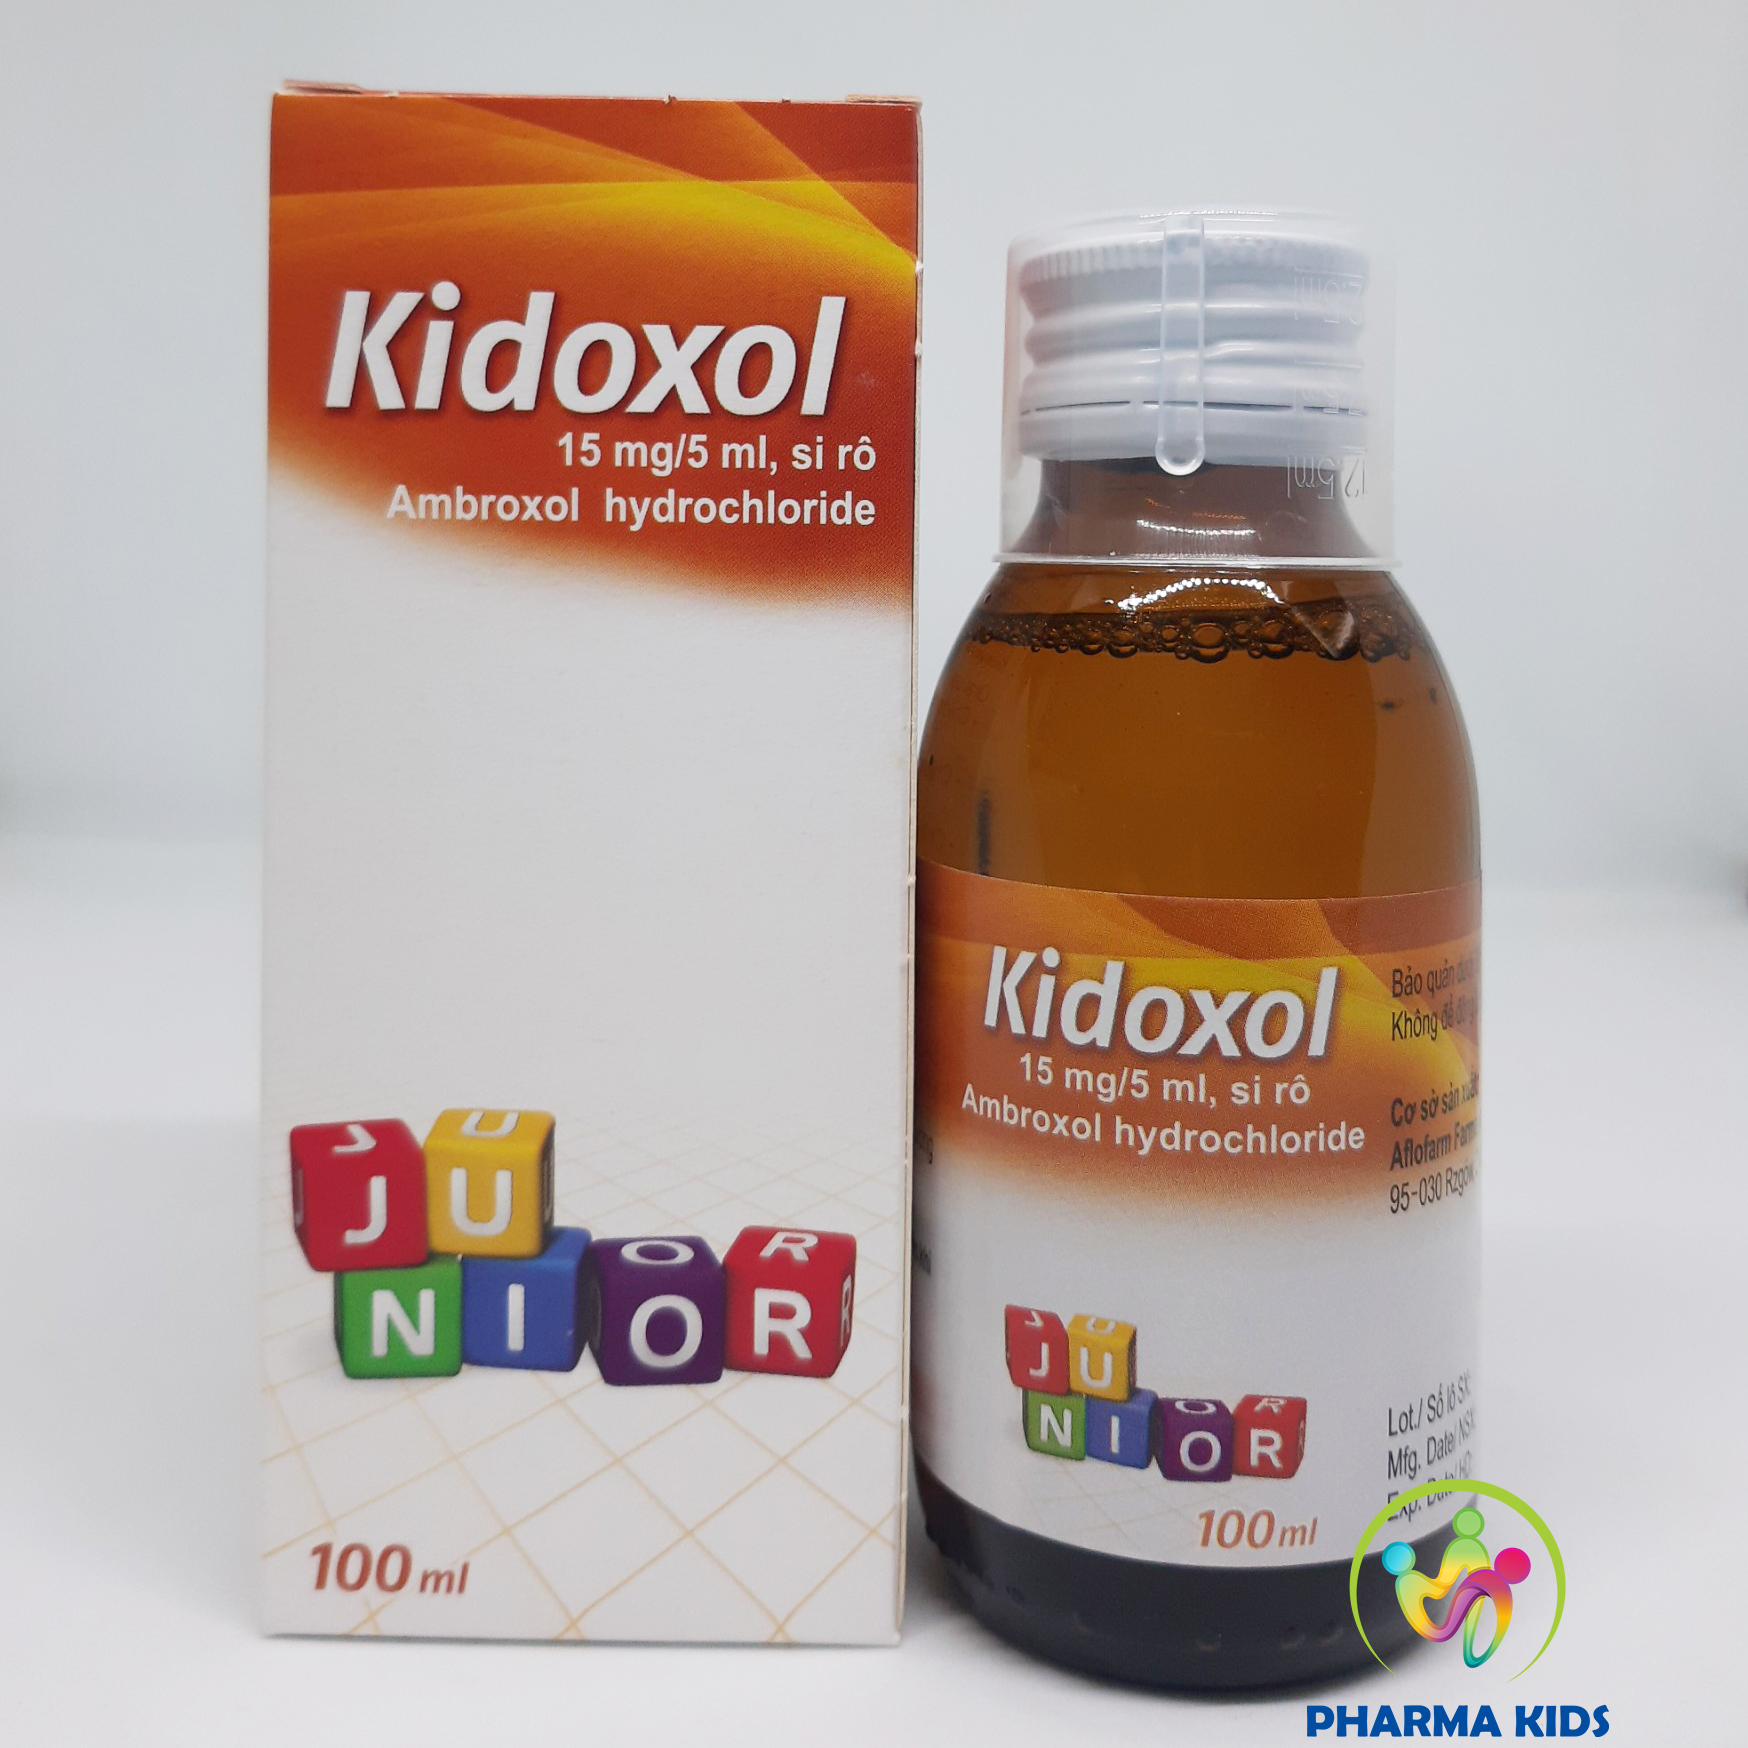 Kidoxol